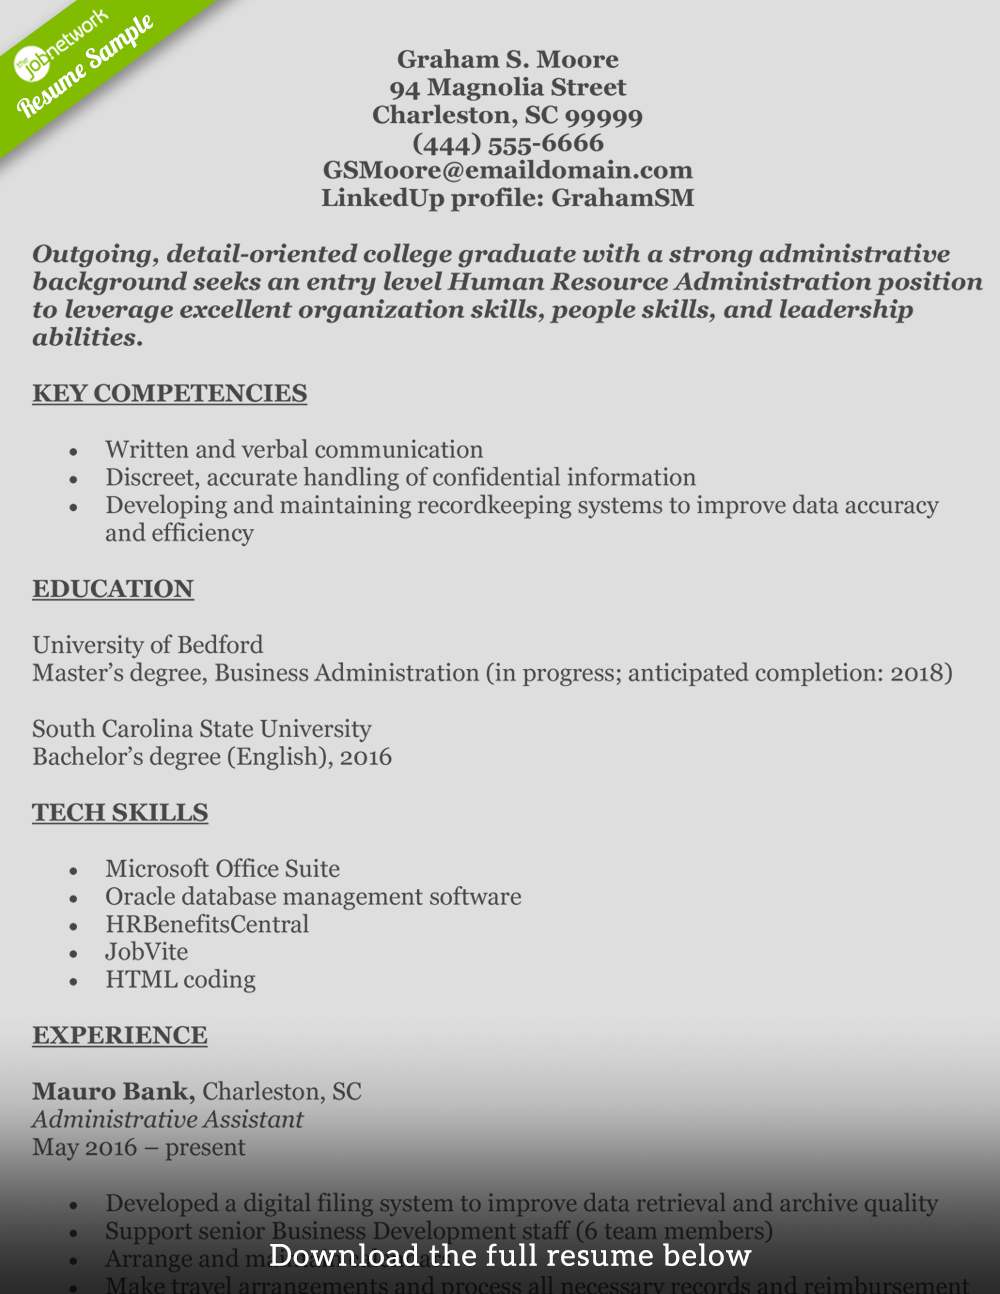 How To Write A Resume For A Job Human Resources Resume Graham how to write a resume for a job|wikiresume.com